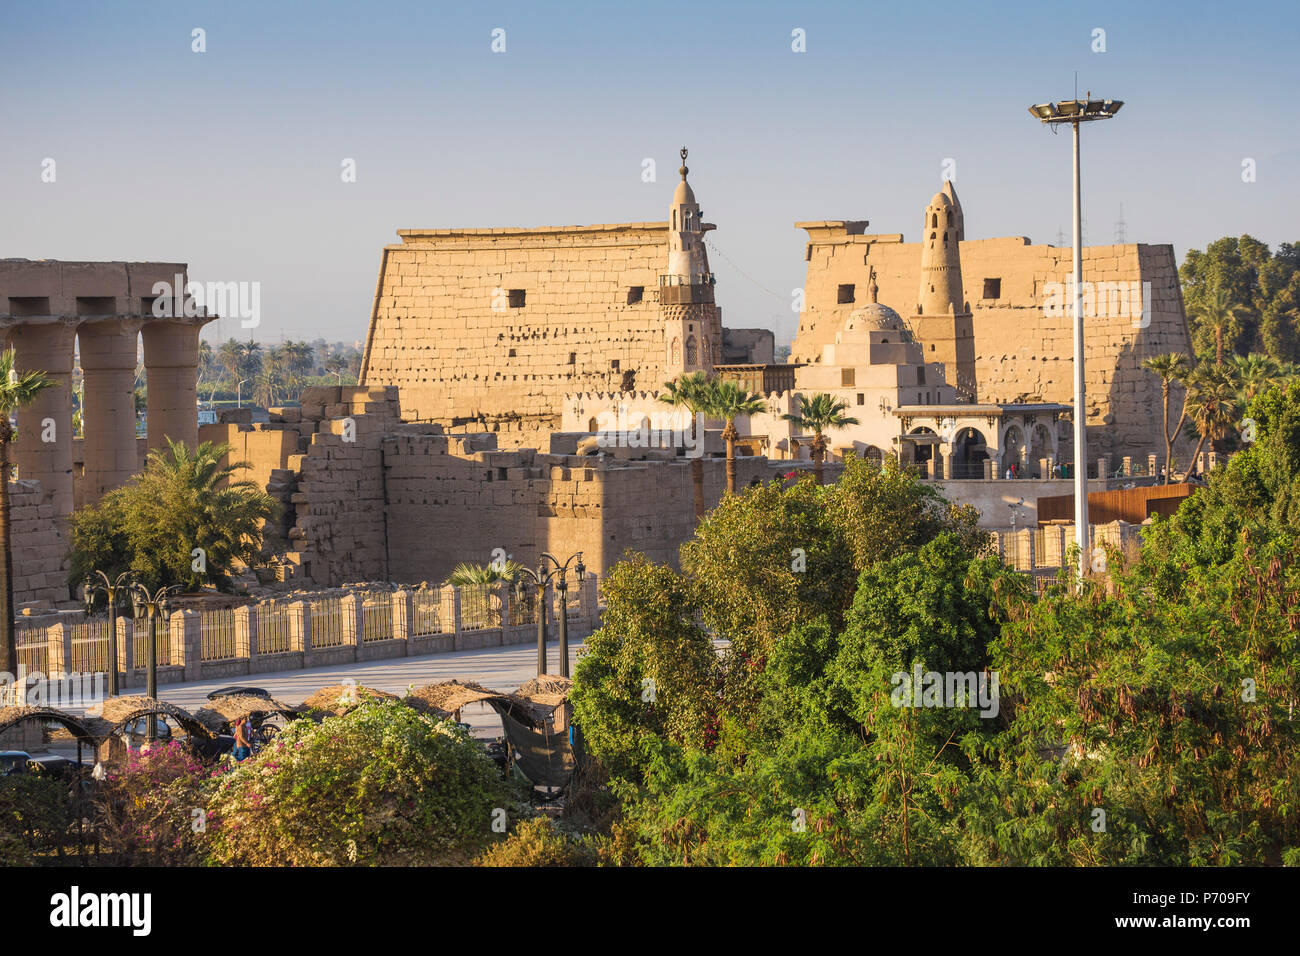 Egitto Luxor, vista del Tempio di Luxor e l'antica moschea di Abu Al Haggag Foto Stock